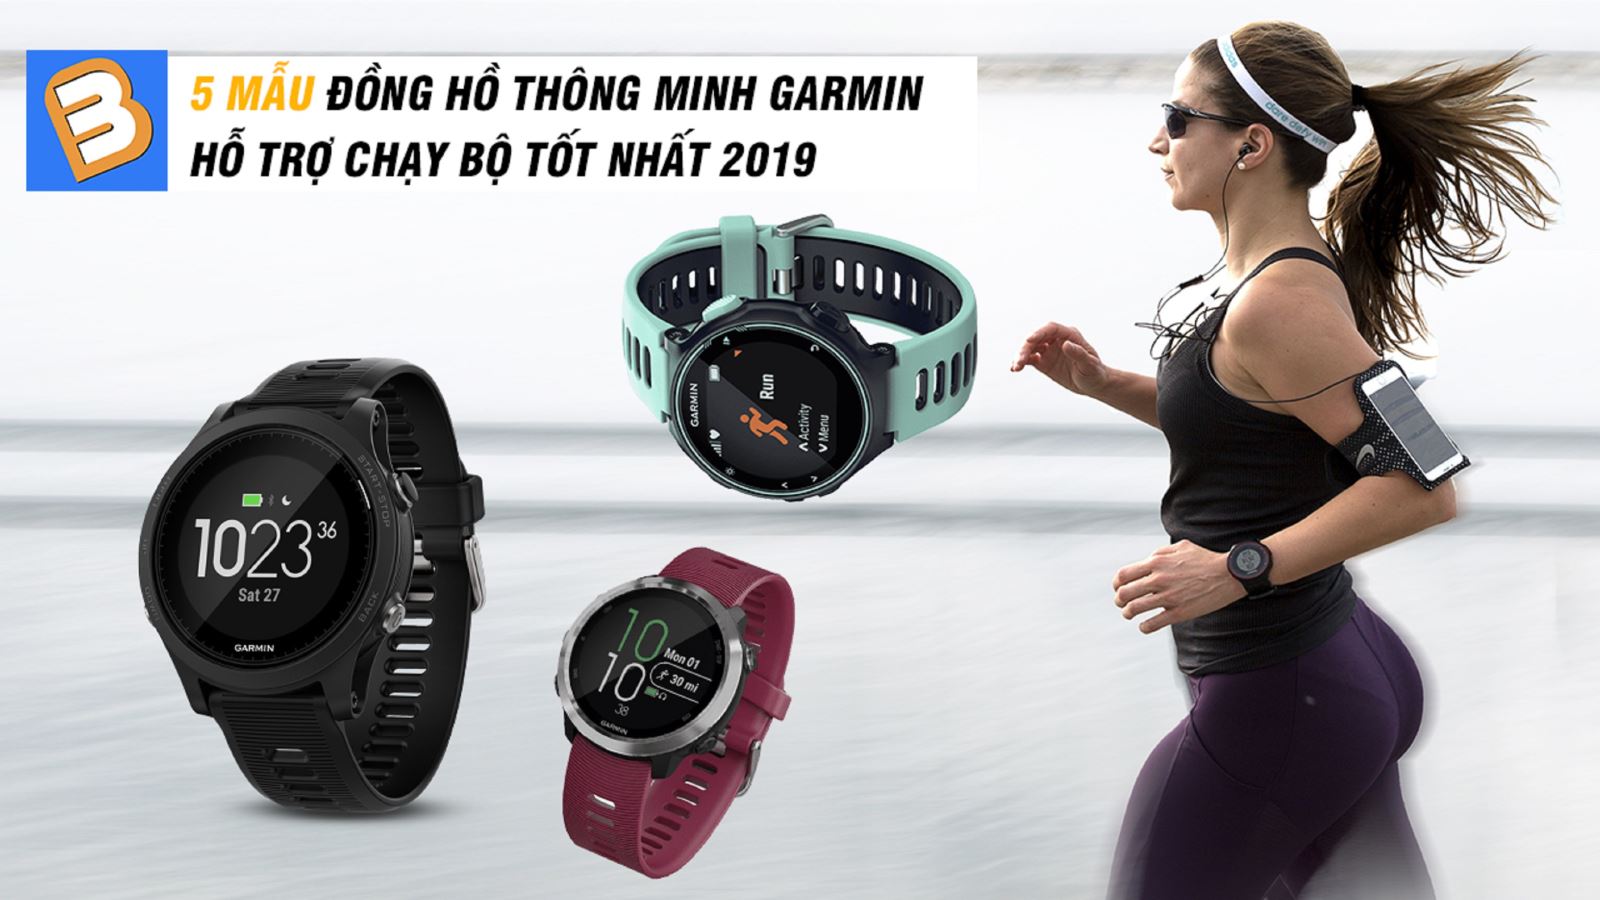 5 mẫu đồng hồ thông minh Garmin hỗ trợ chạy bộ tốt nhất 2019